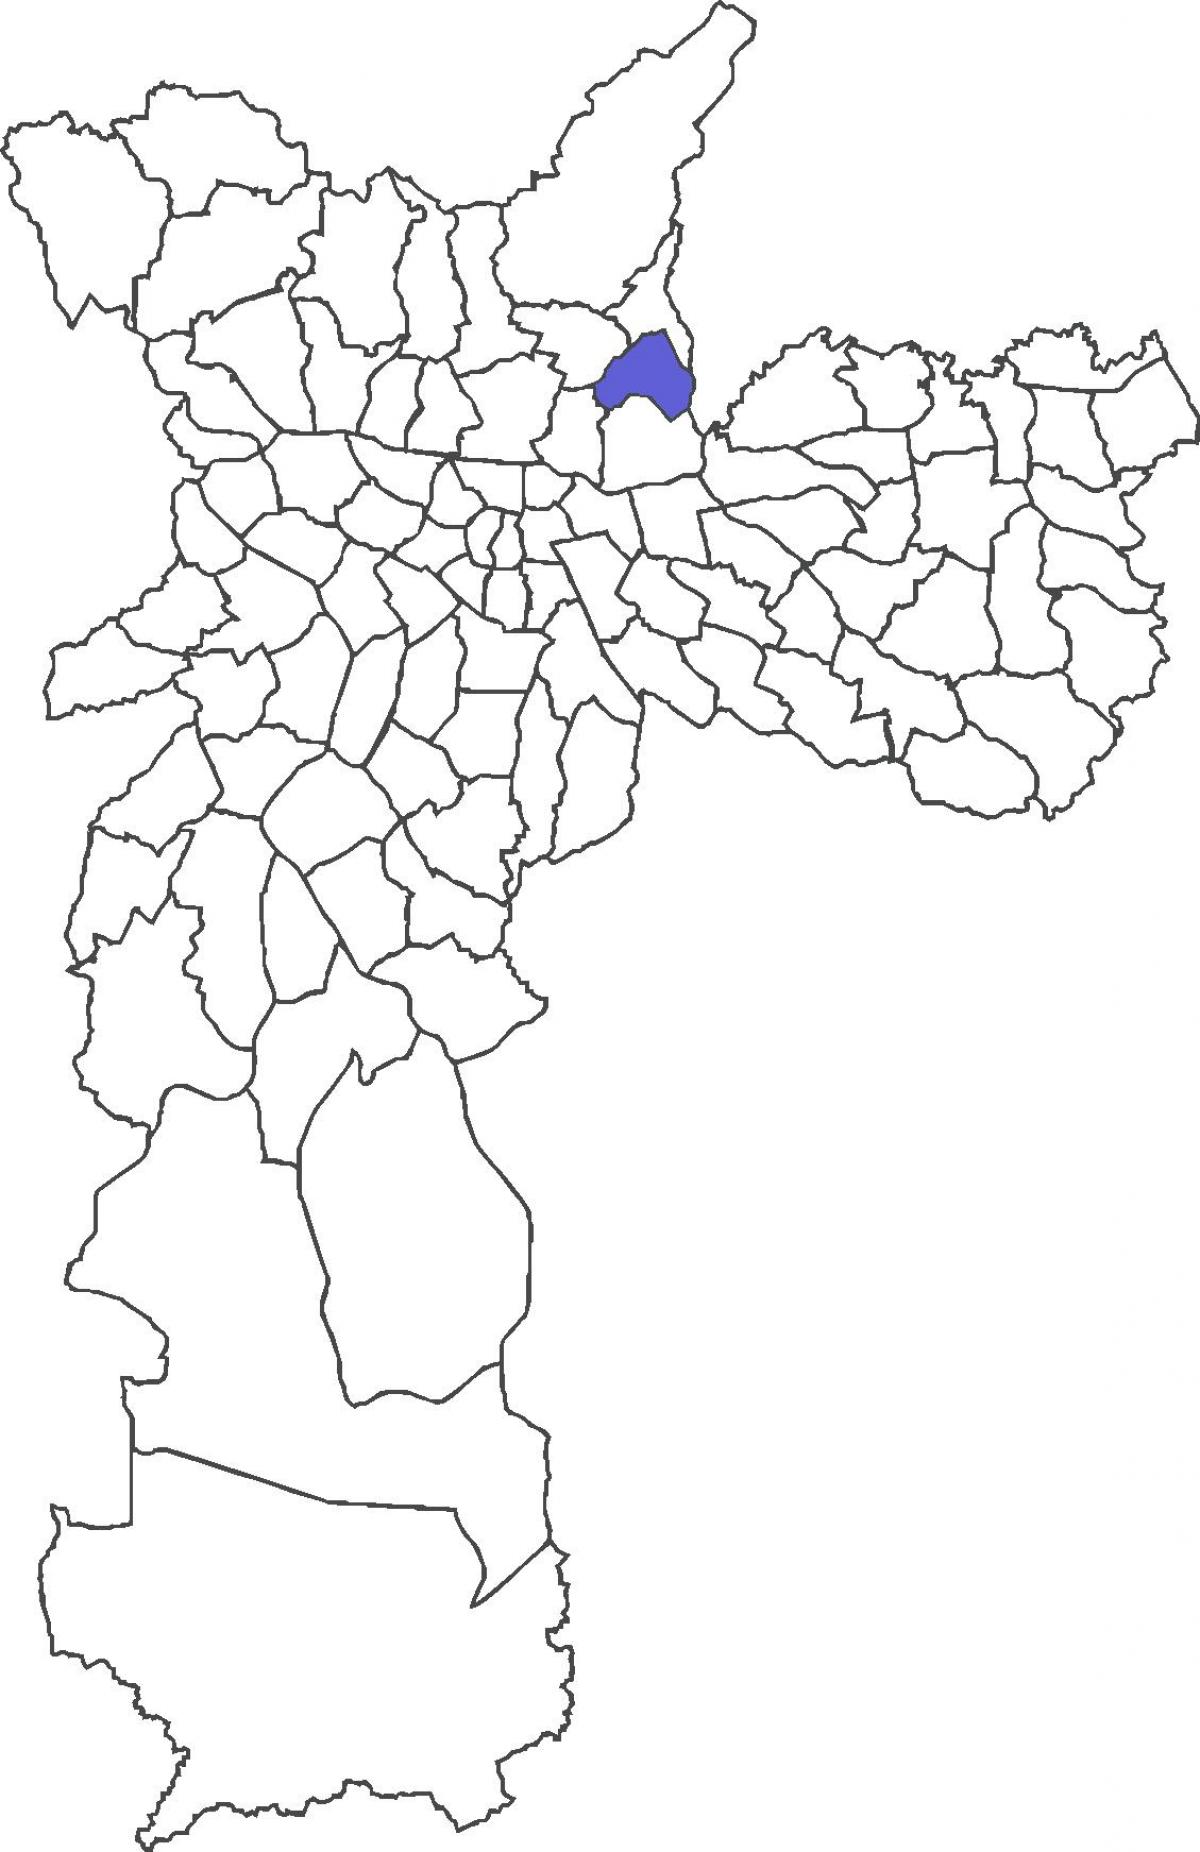 નકશો Vila મેડેઇરોસ જિલ્લા